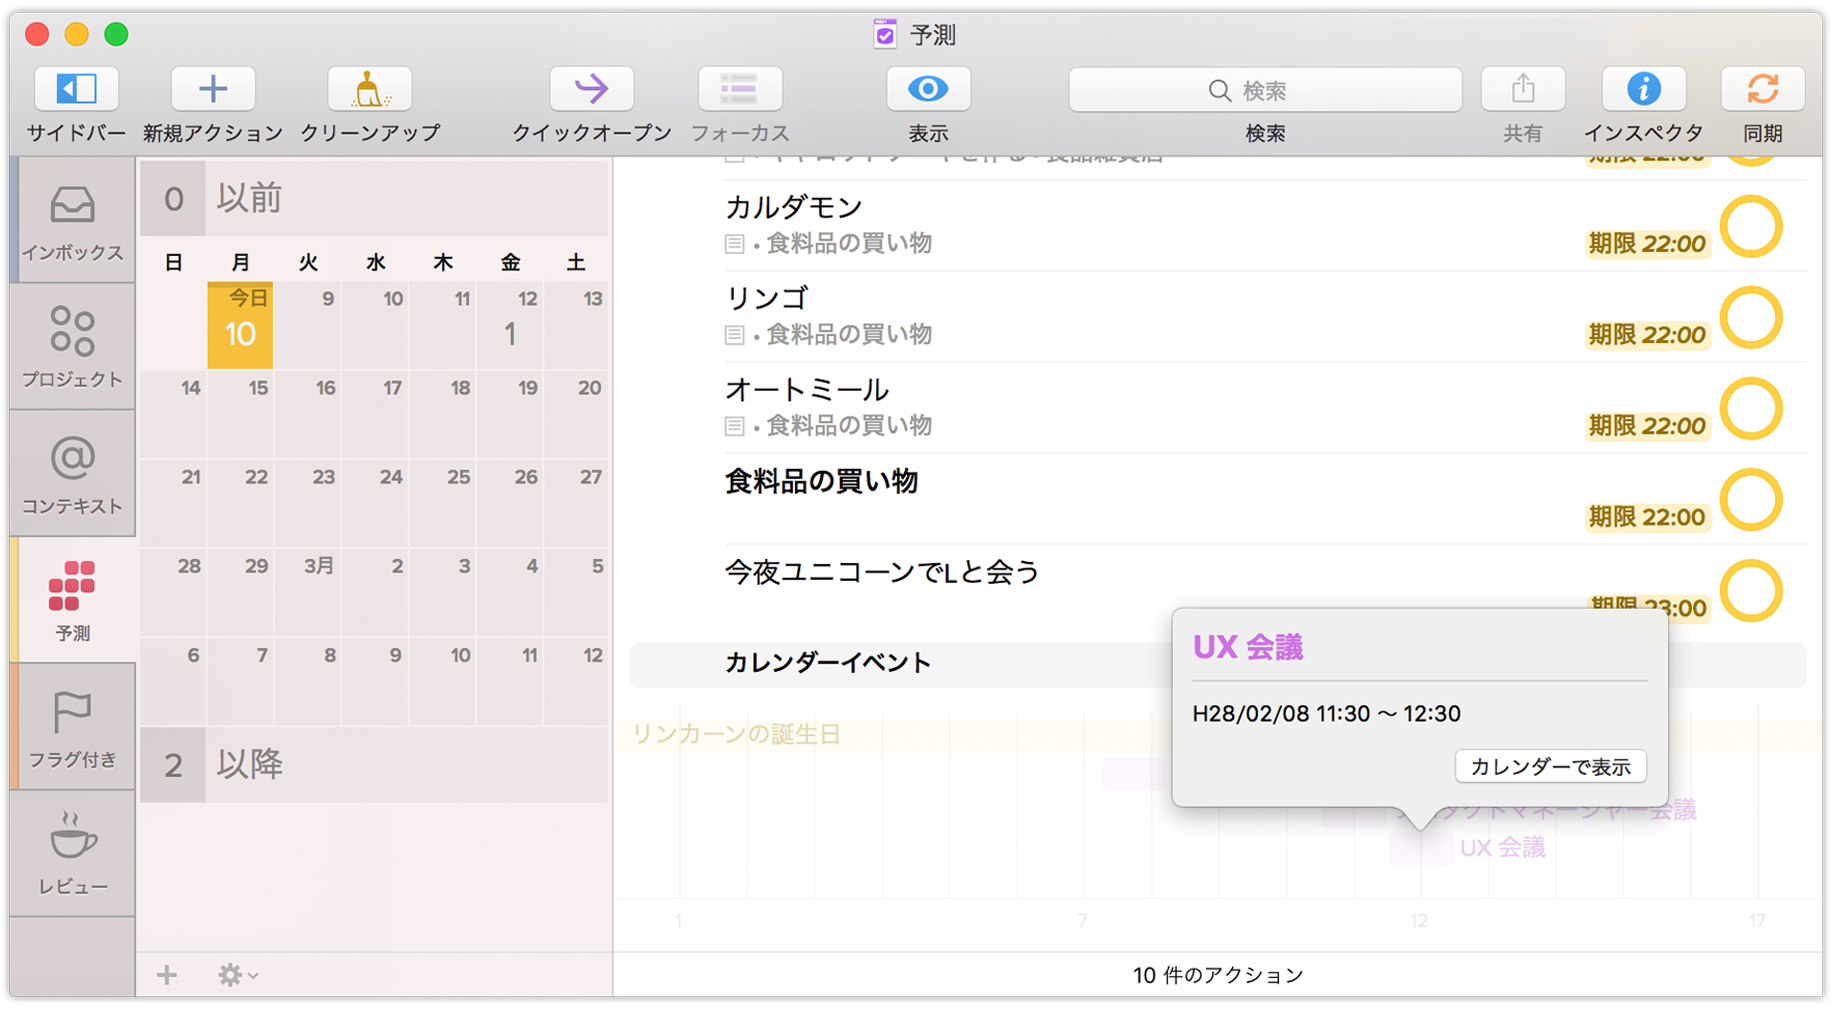 「カレンダーで表示」をクリックすると、OS X のカレンダーアプリを使ってイベントが開きます